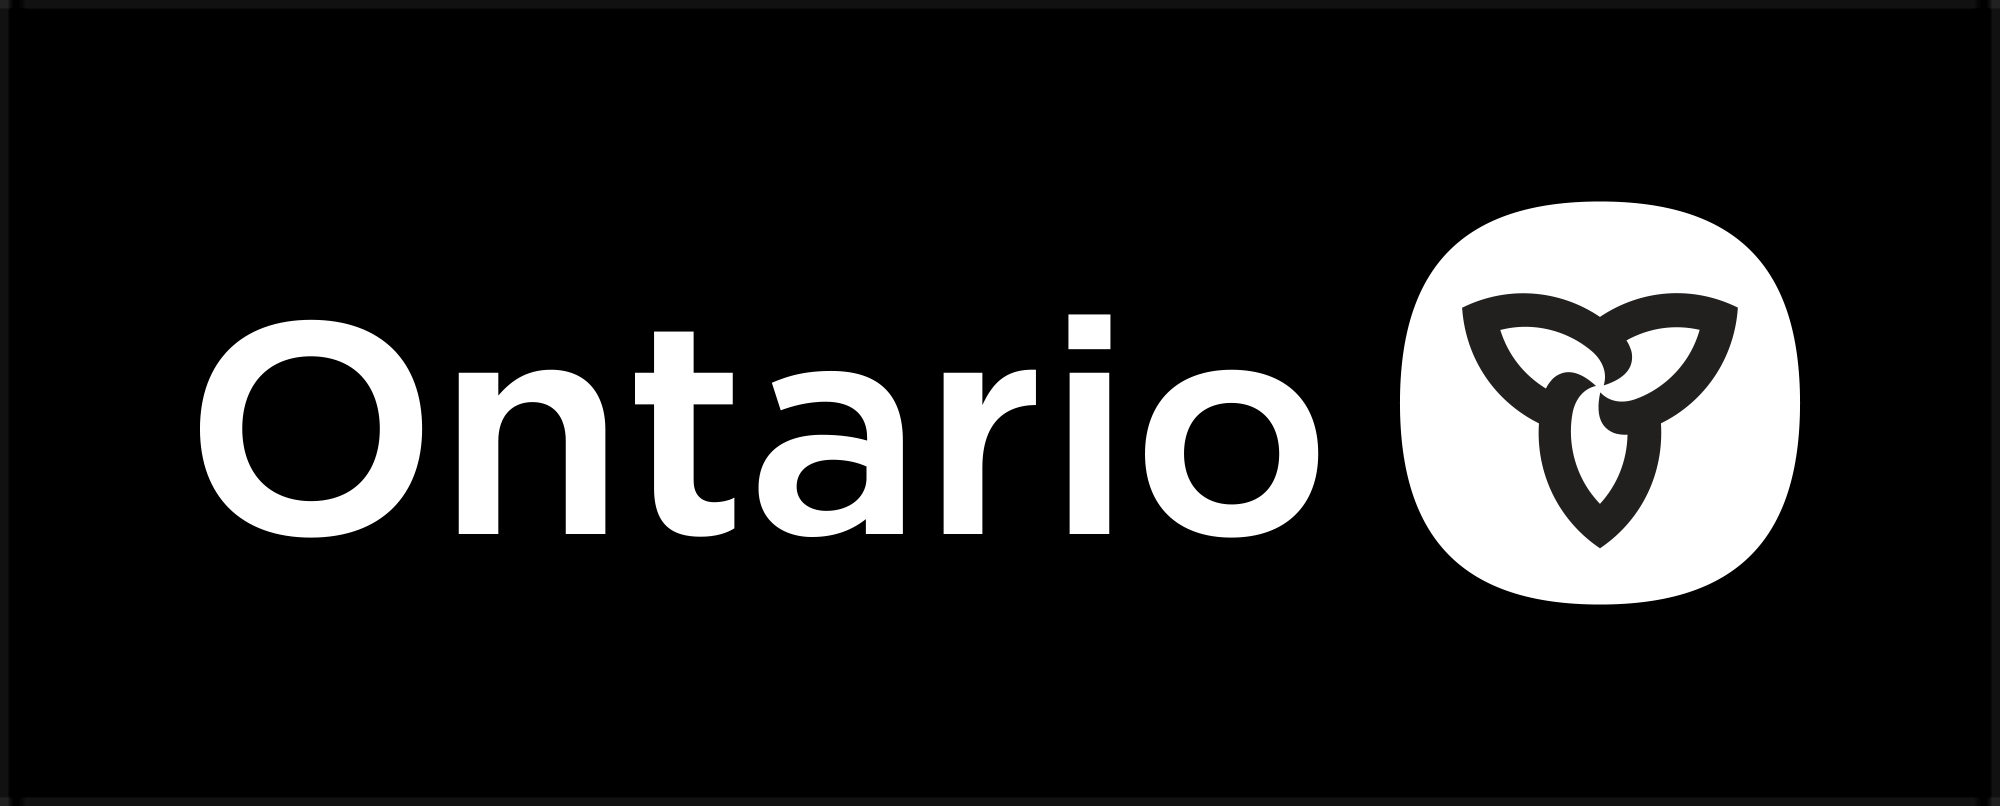  Новый логотип для Онтарио 